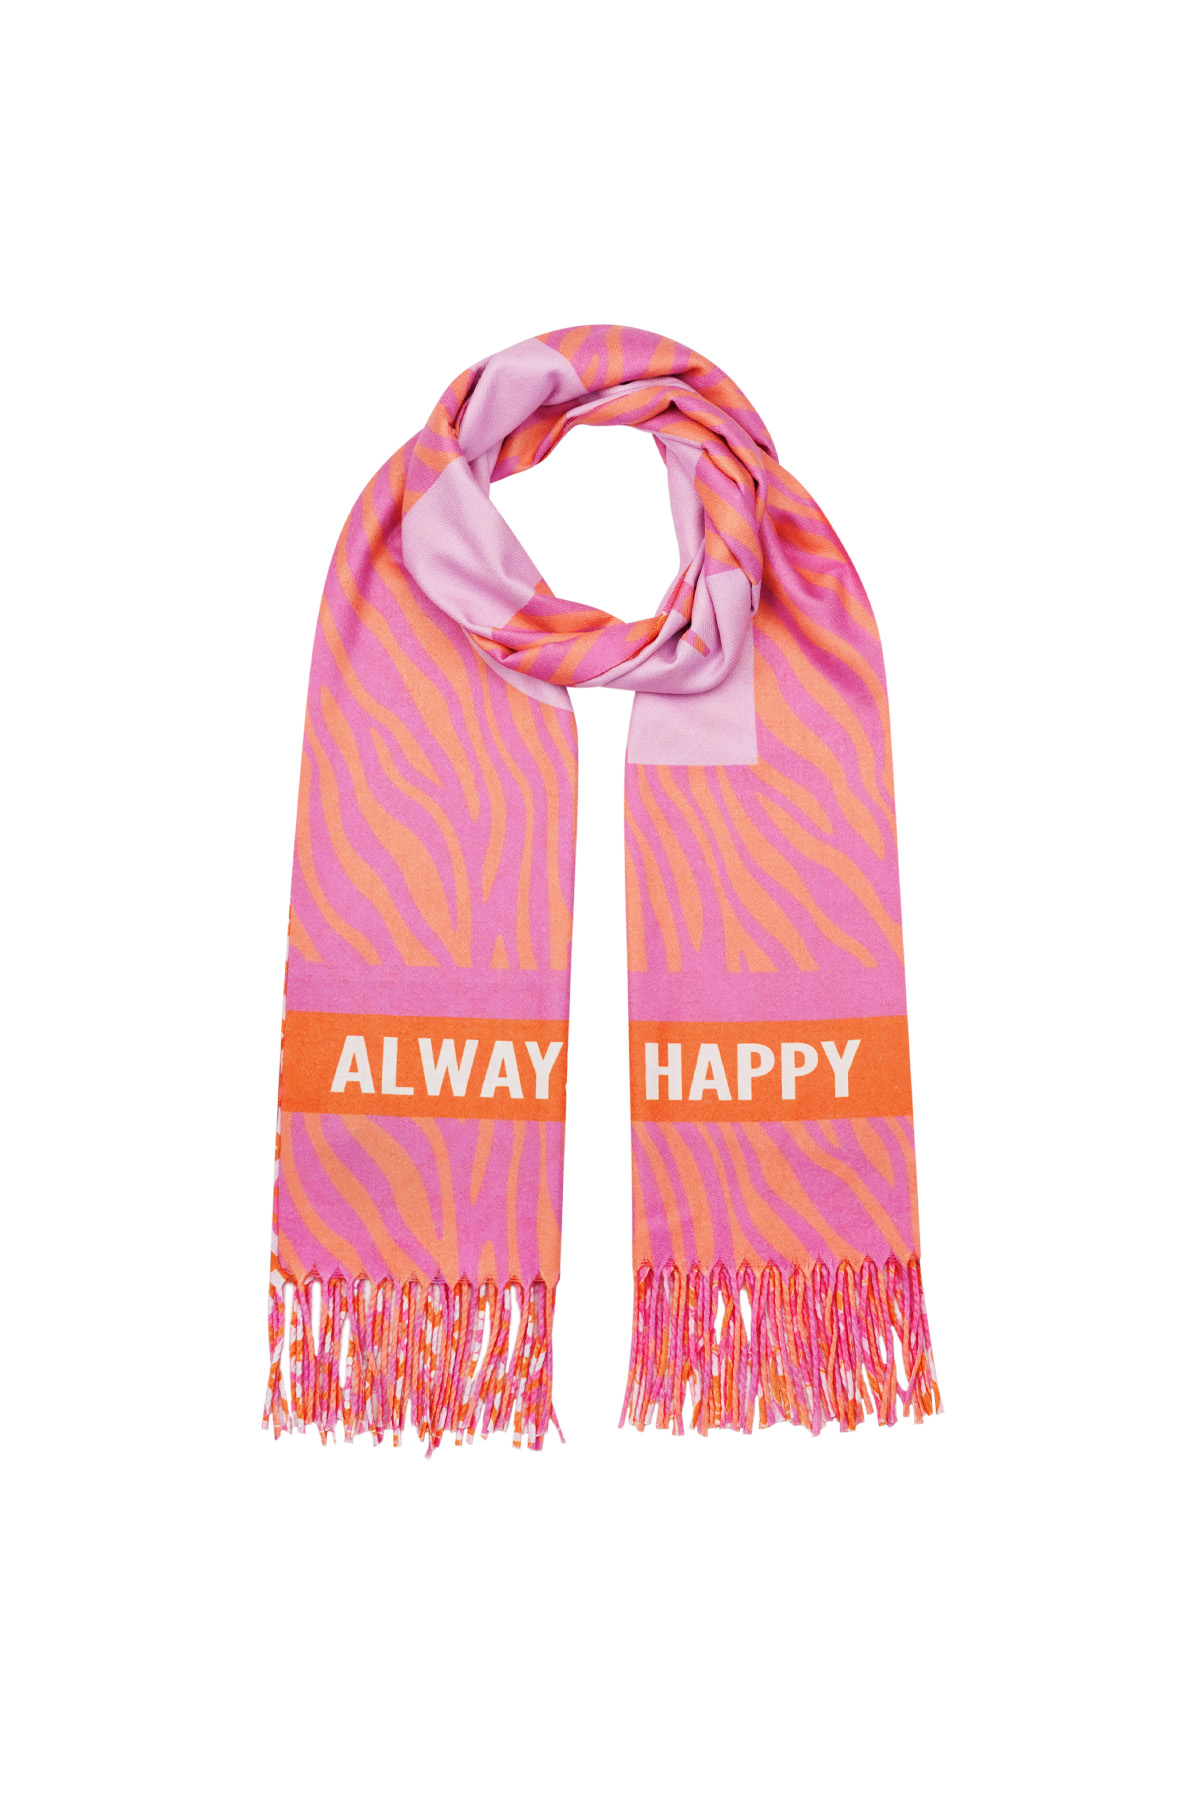 Duo foulard imprimé - rose-orange h5 